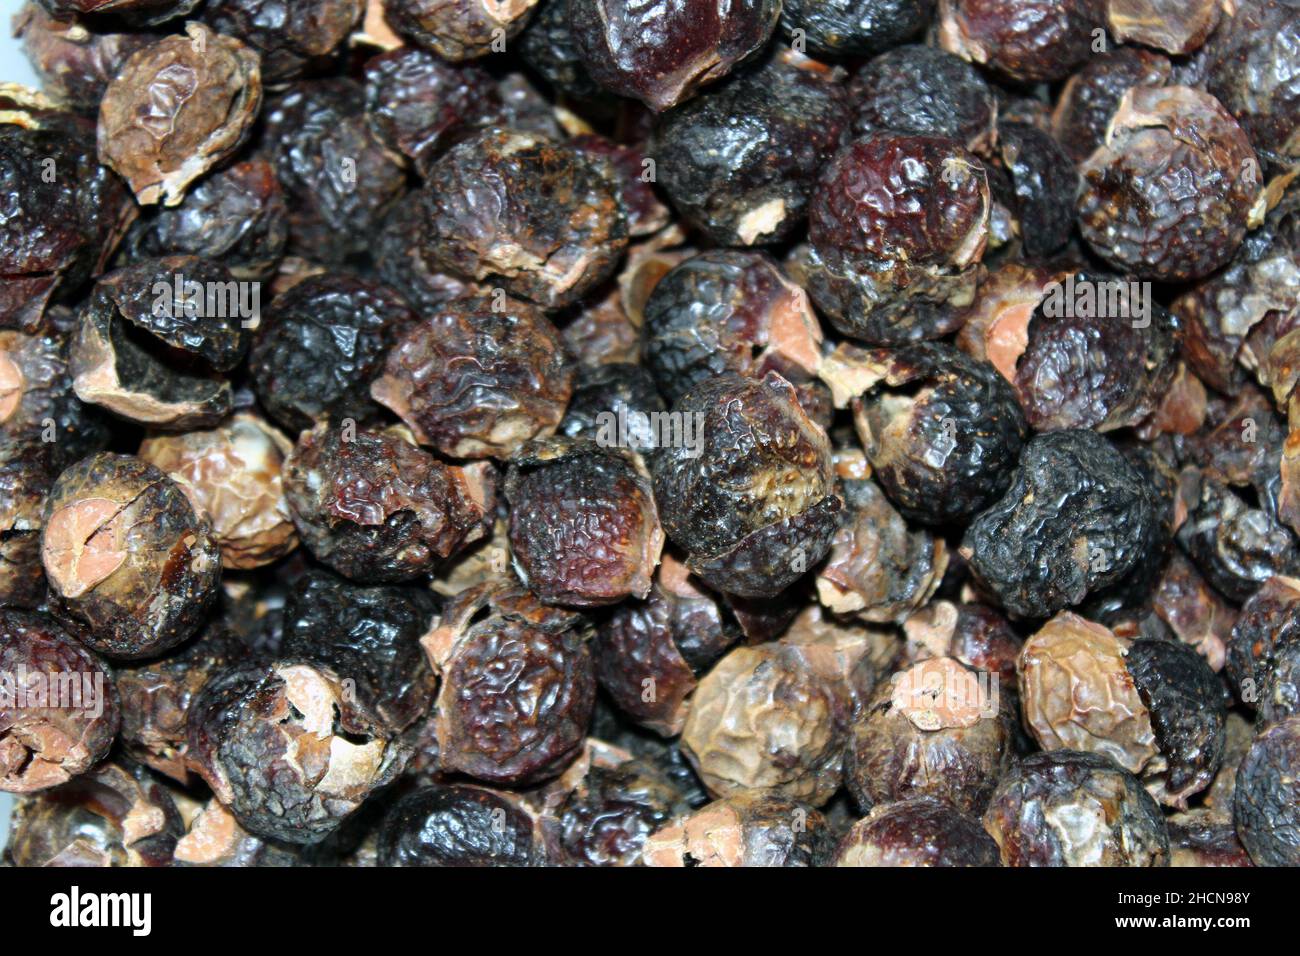 Sapindus mukorossi ou savonneuse indienne. De nombreuses noix de savon prêtes à être utilisées en machine à laver Banque D'Images